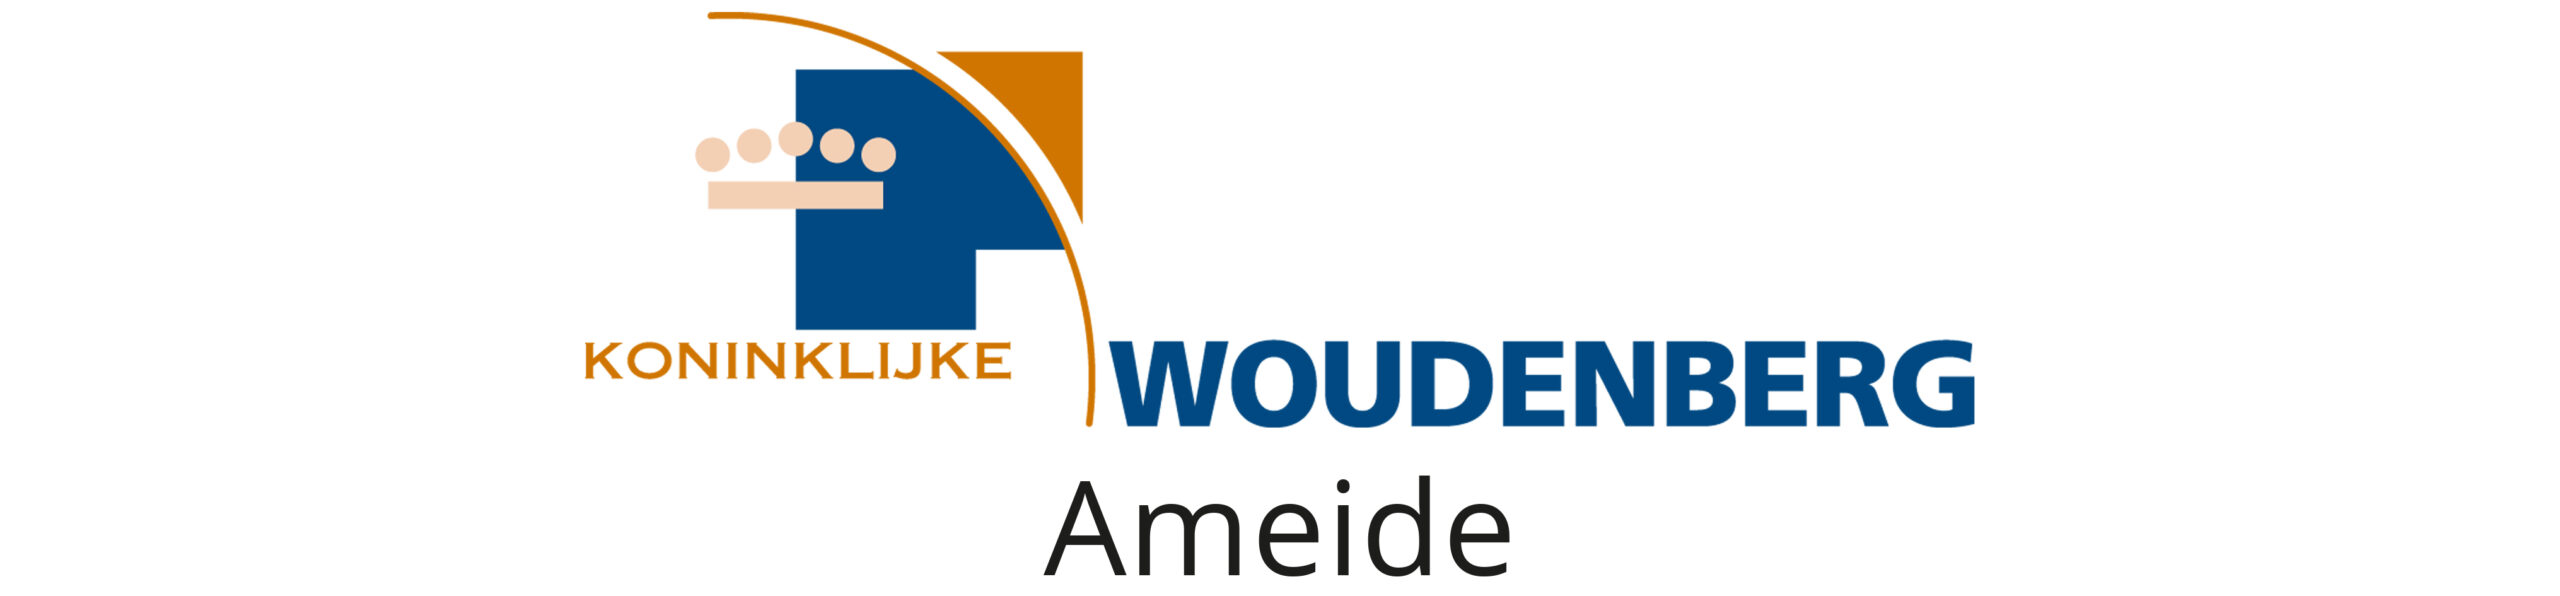 Konlinklijke Woudenberg Ameide